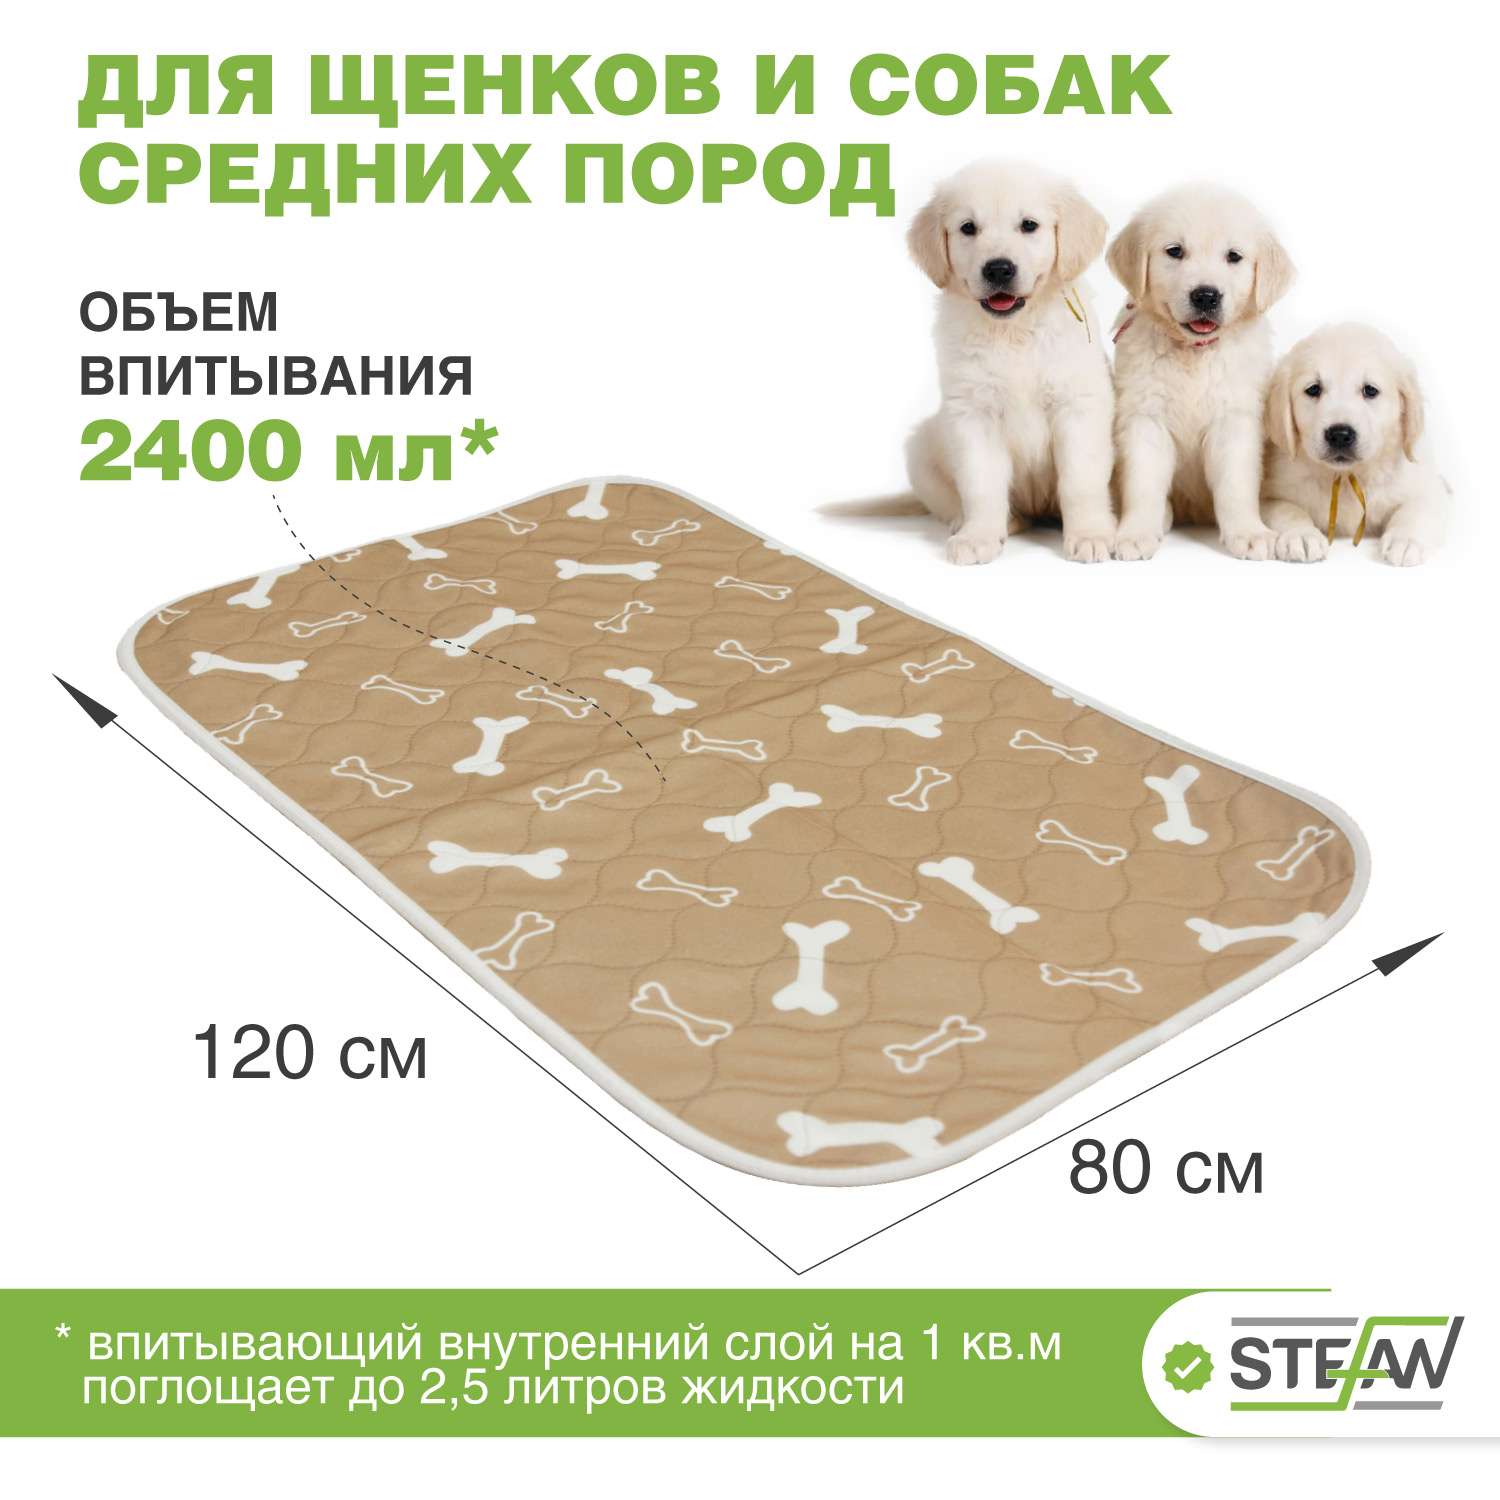 Пеленка для животных Stefan впитывающая многоразовая коричневая 80х120 см - фото 2